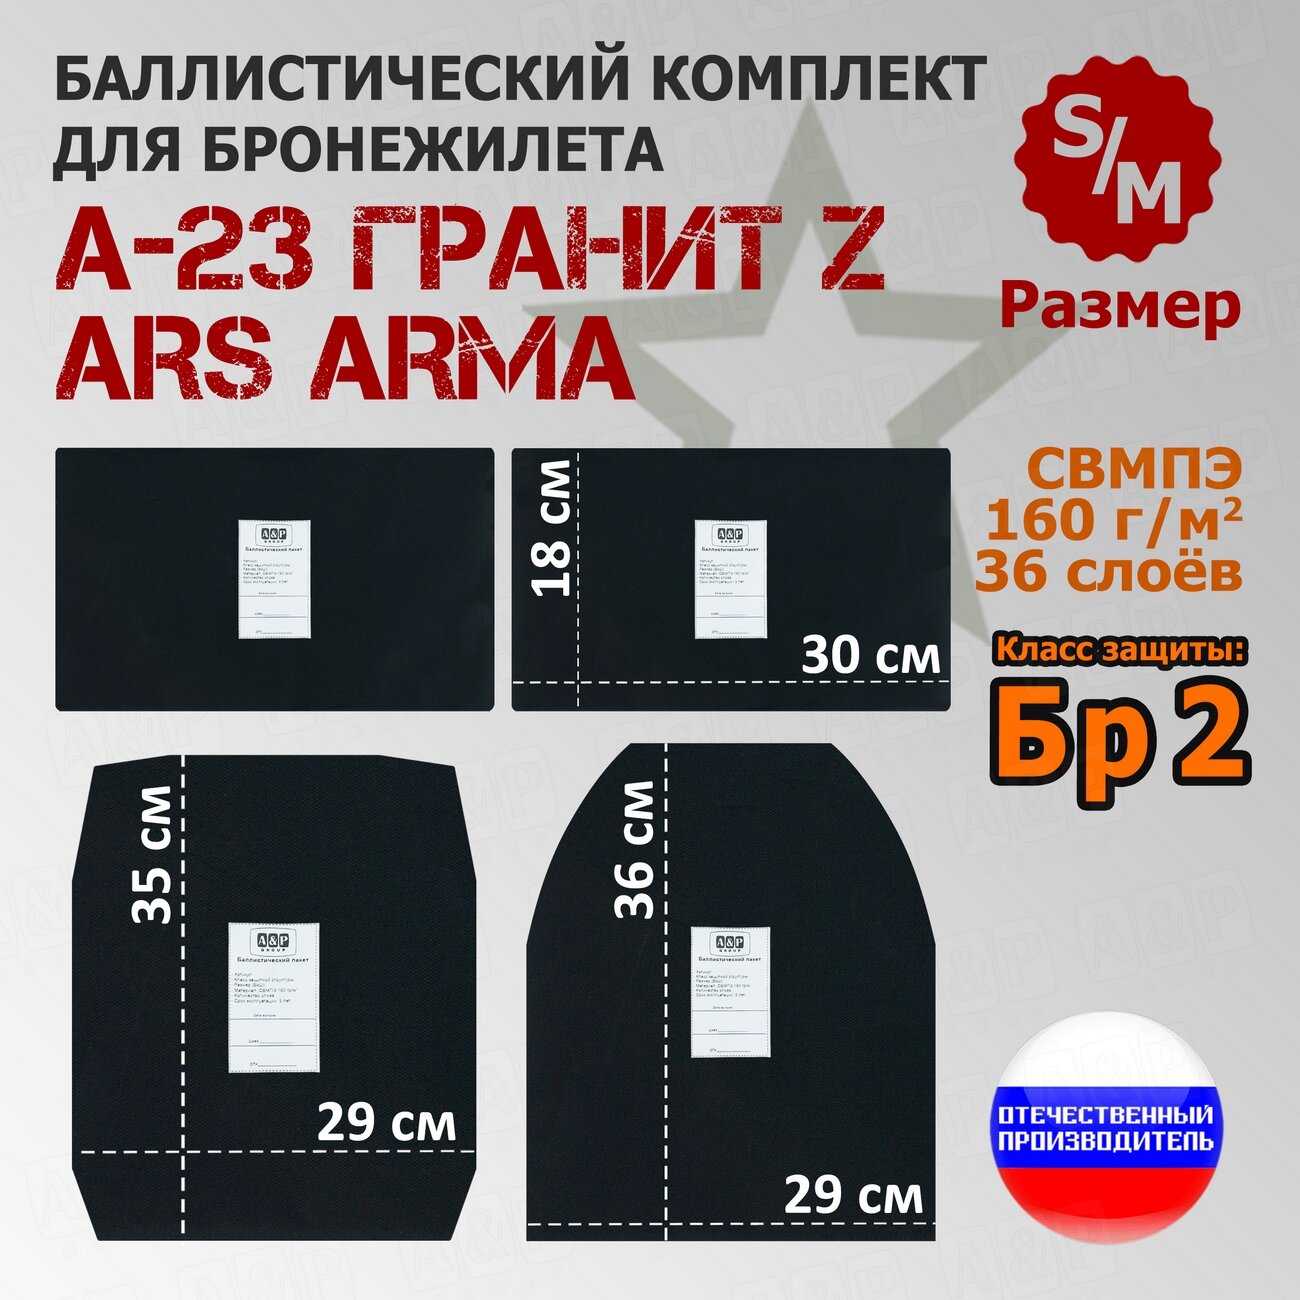 Комплект баллистических пакетов для бронежилета А-23 Гранит Z Ars Arma. Размер S/M. Класс защитной структуры Бр 2.